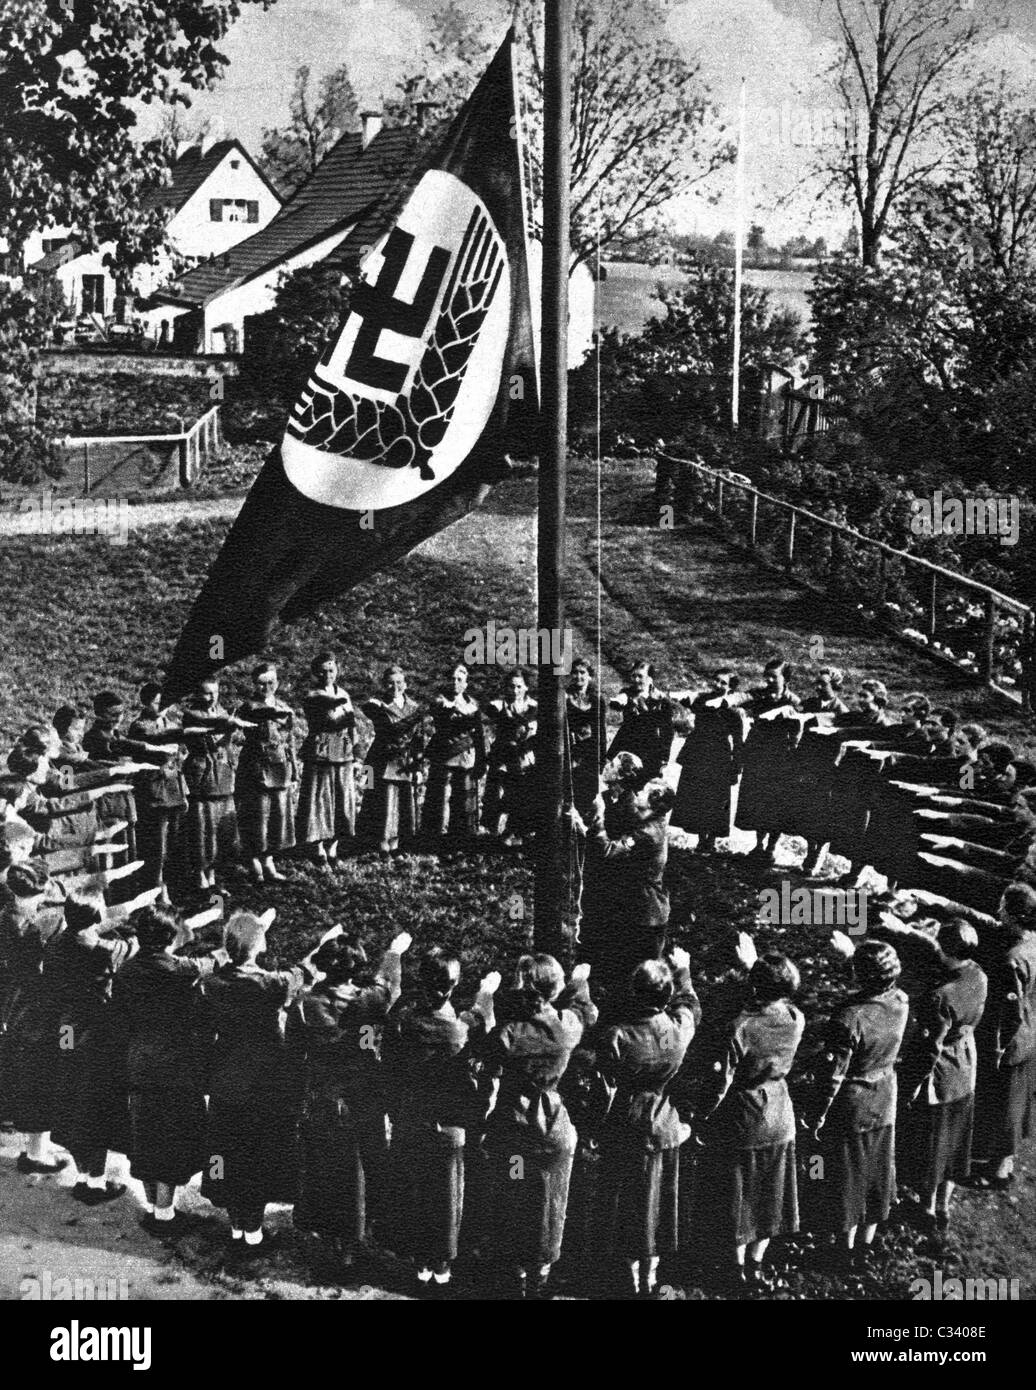 RADWJ Mitglieder geben den Hitlergruß an der Farben Zeremonie, die Anhebung des RADWJ Flagge. Stockfoto